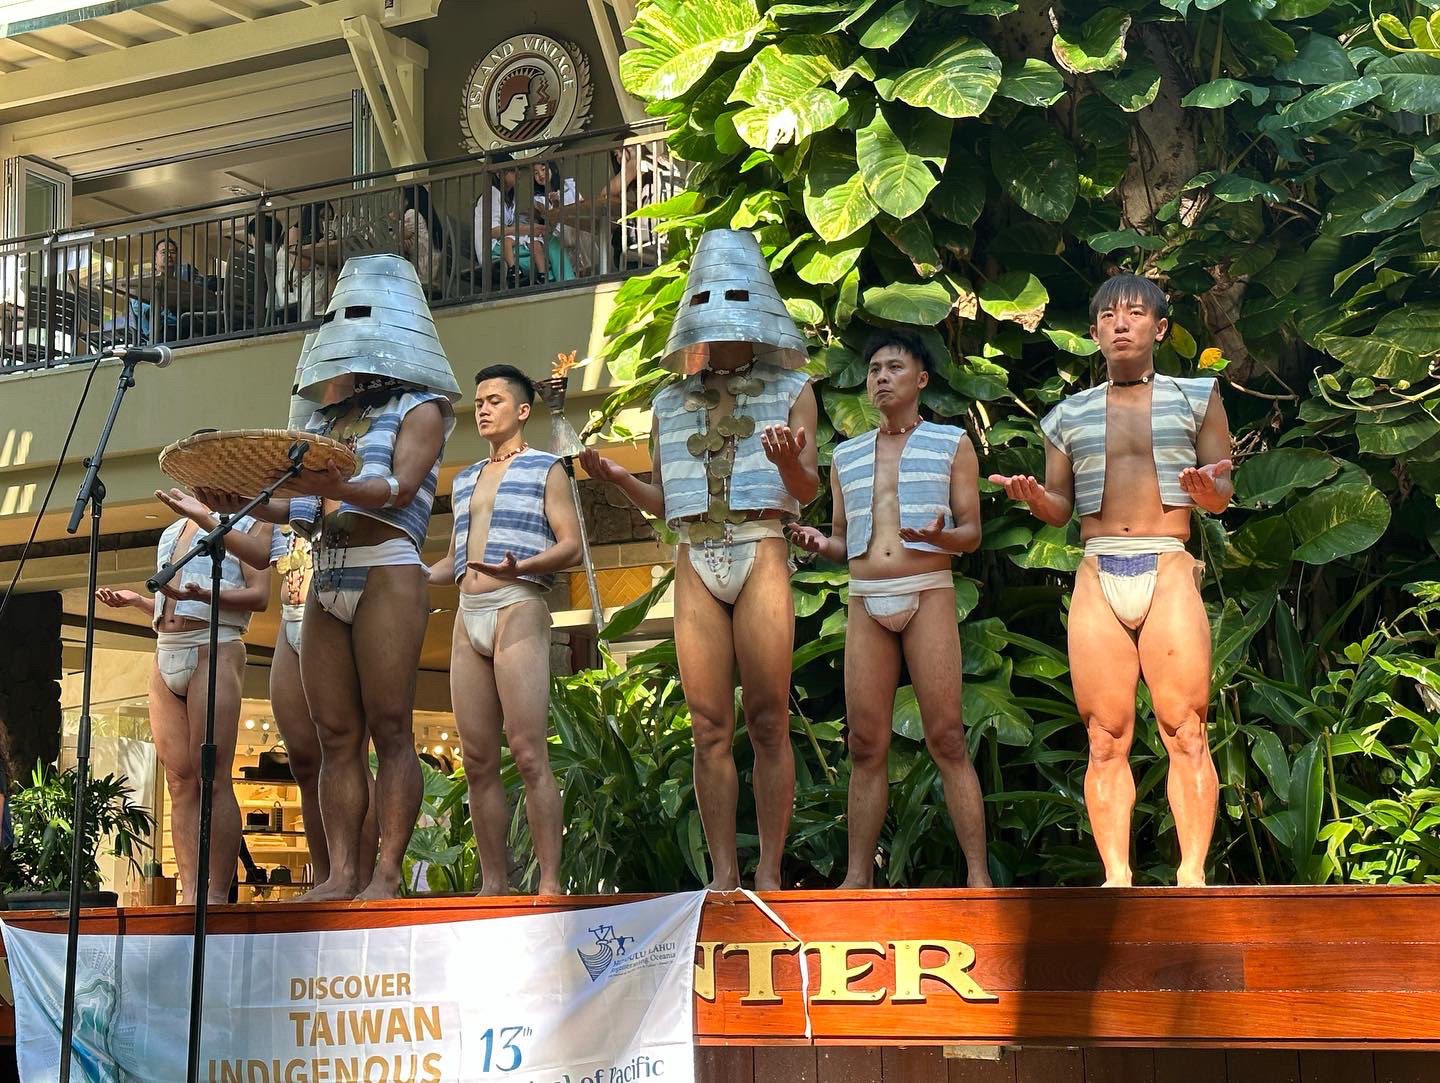 臺灣代表團在「太平洋藝術節」樂舞吟唱展演 　以軟實力提升臺灣能見度